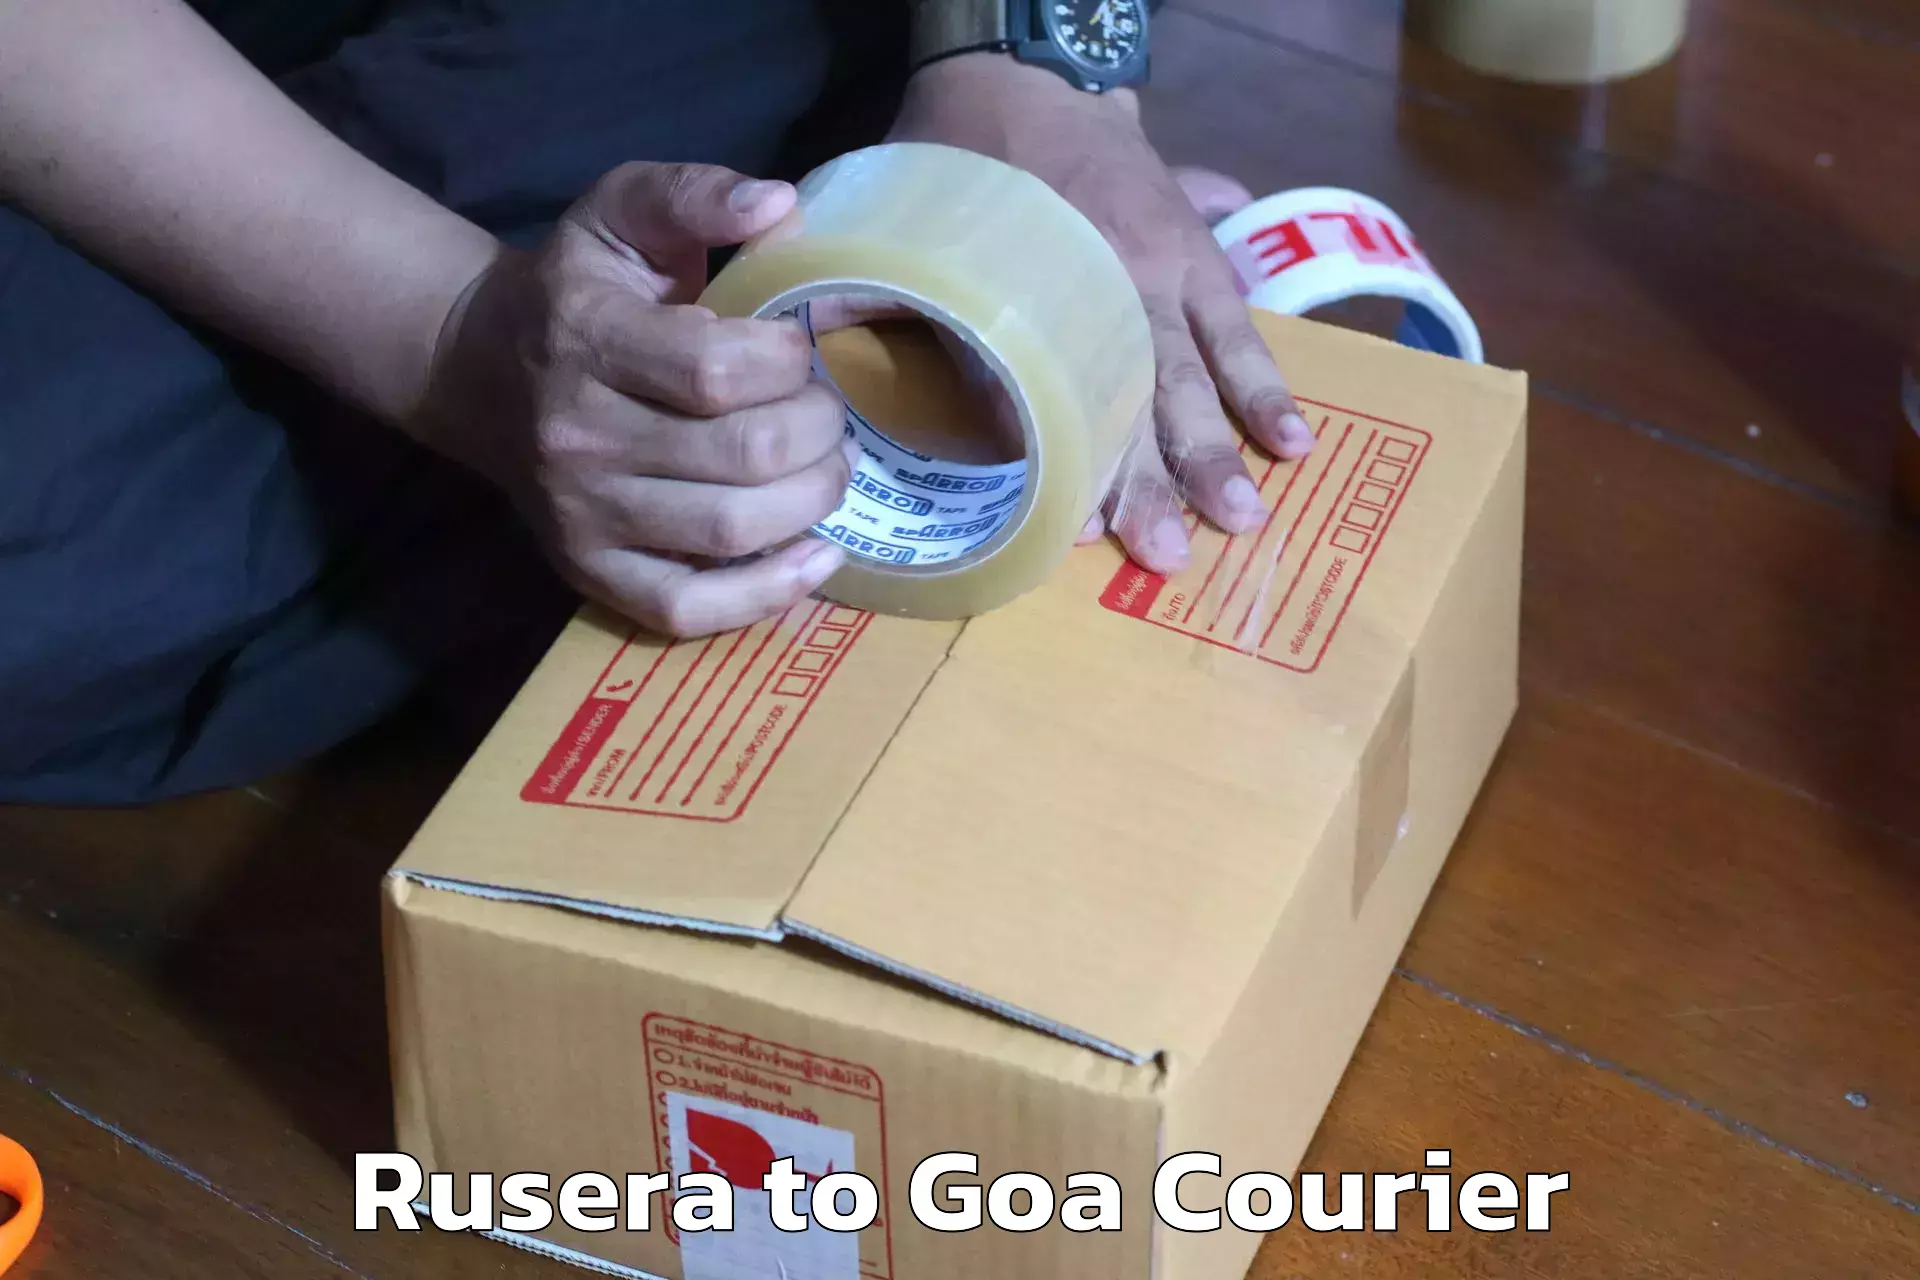 Furniture moving experts Rusera to Goa